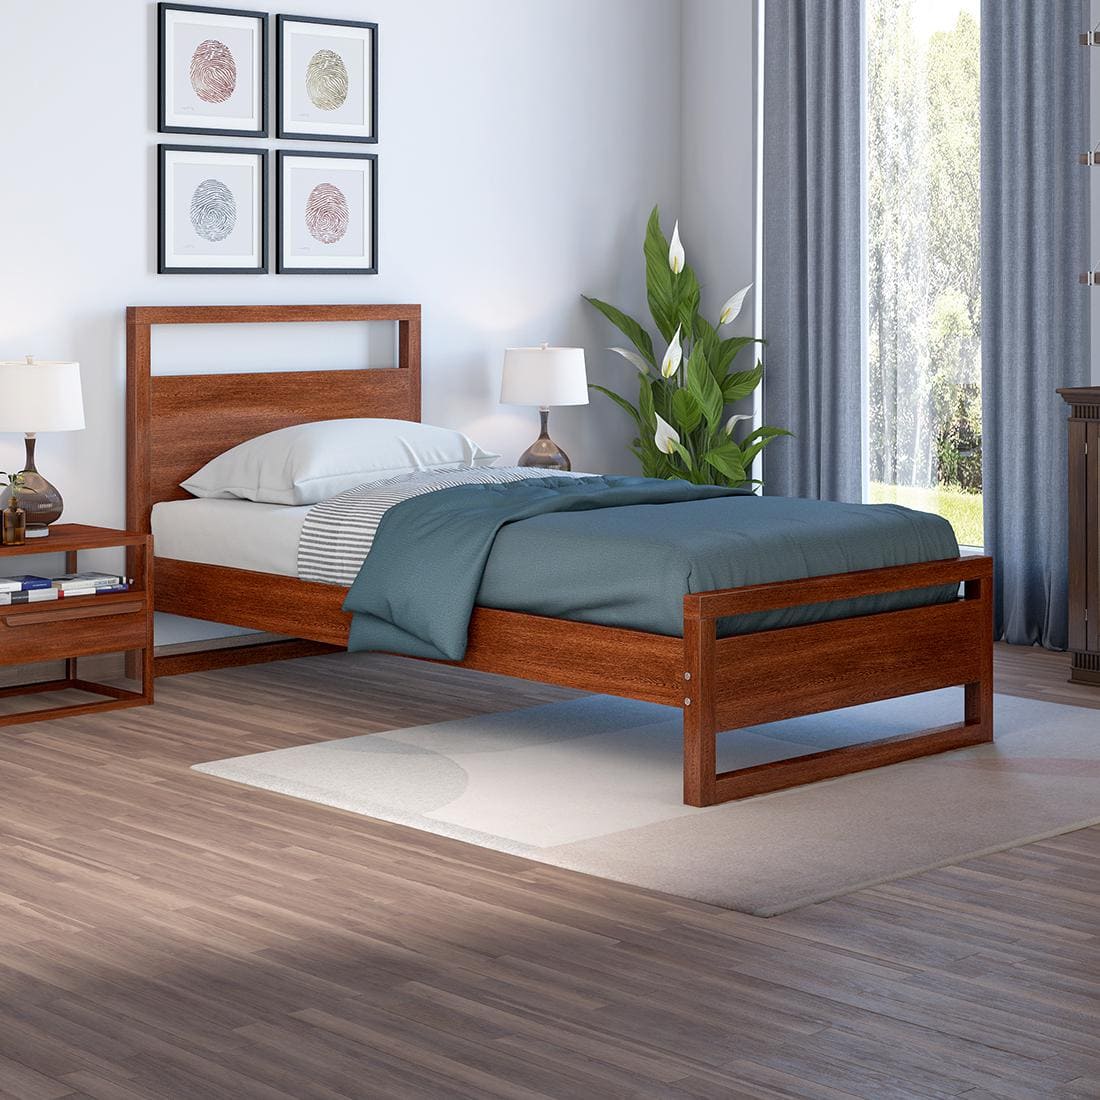 Mẫu giường gỗ đơn đẹp